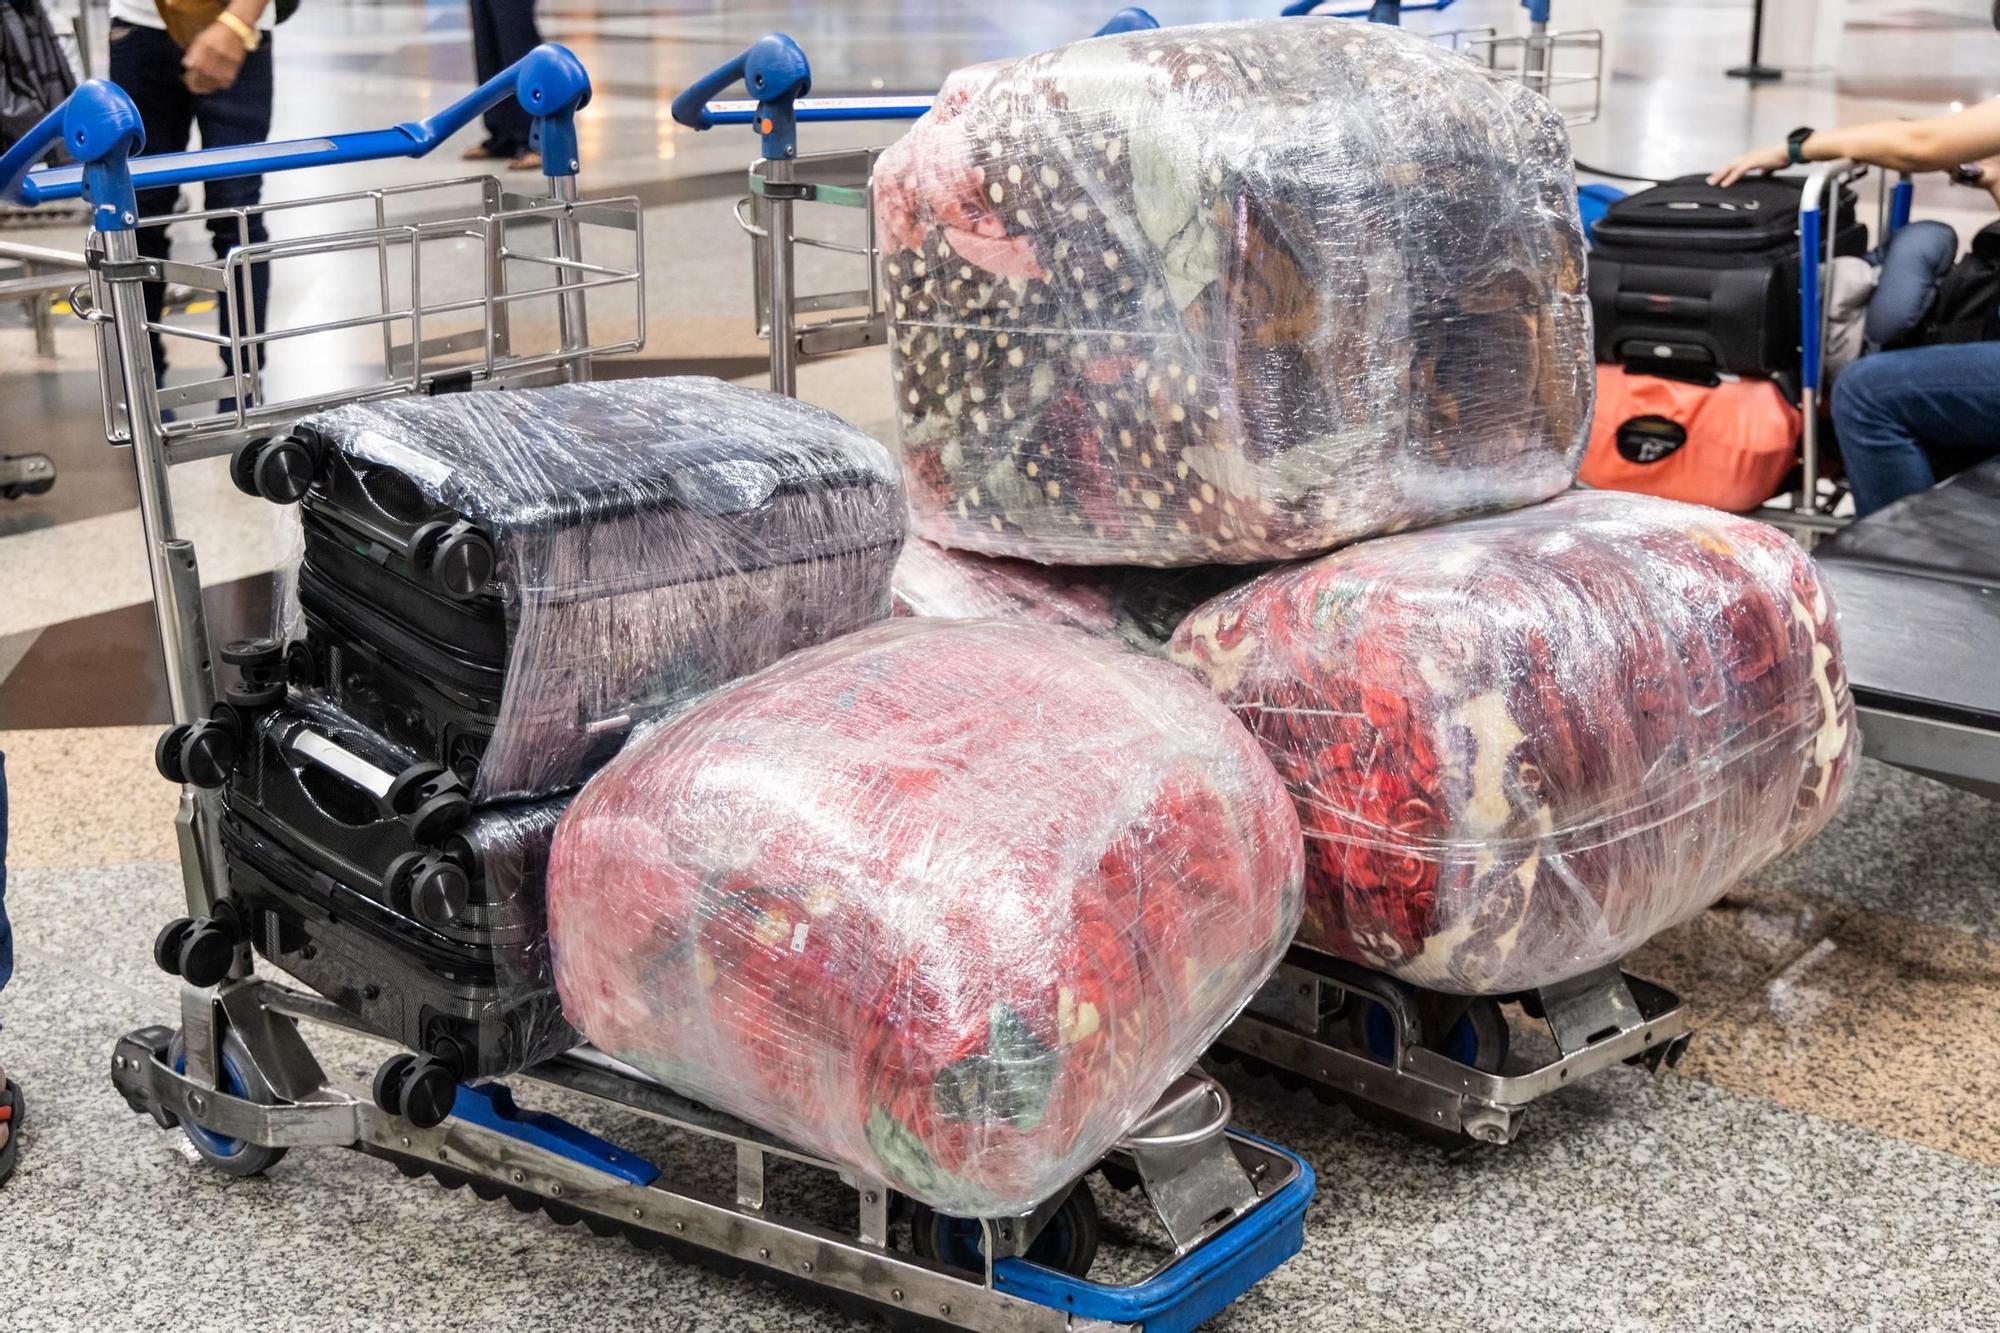 Forrar las maletas de plástico es una práctica cada vez más extendida pero tiene más contras que pros